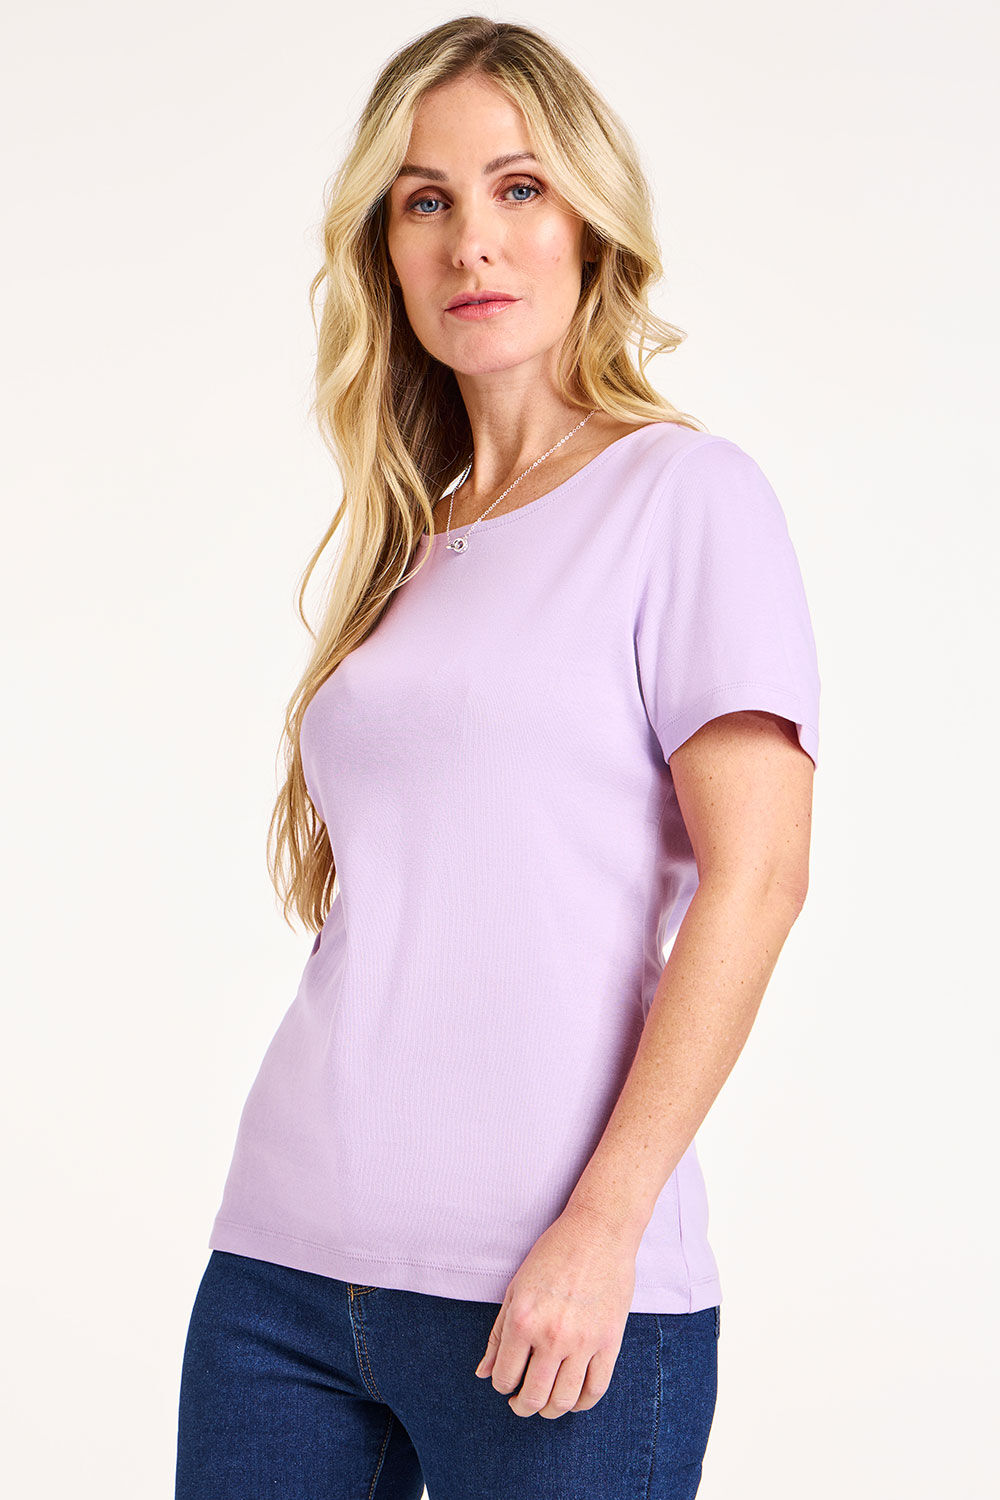 Bonmarche Women’s Light Purple Cotton Classic Short Sleeve Plain Scoop Neck T-Shirt, Size: 14